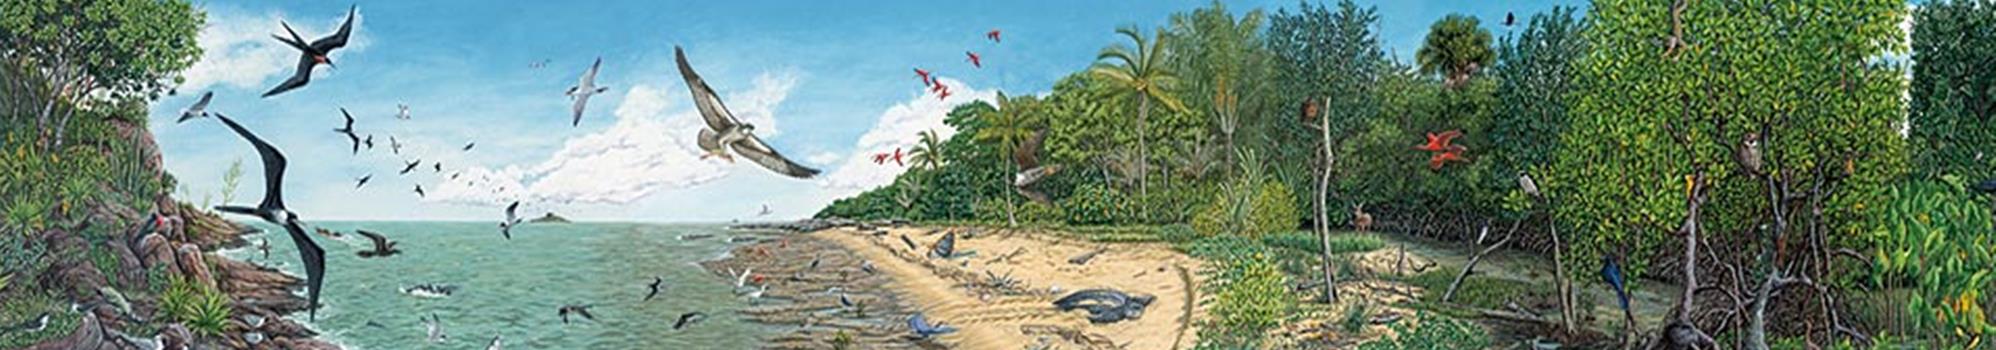 Fresque des paysages naturels guyanais n°1 : De la mer à la mangrove